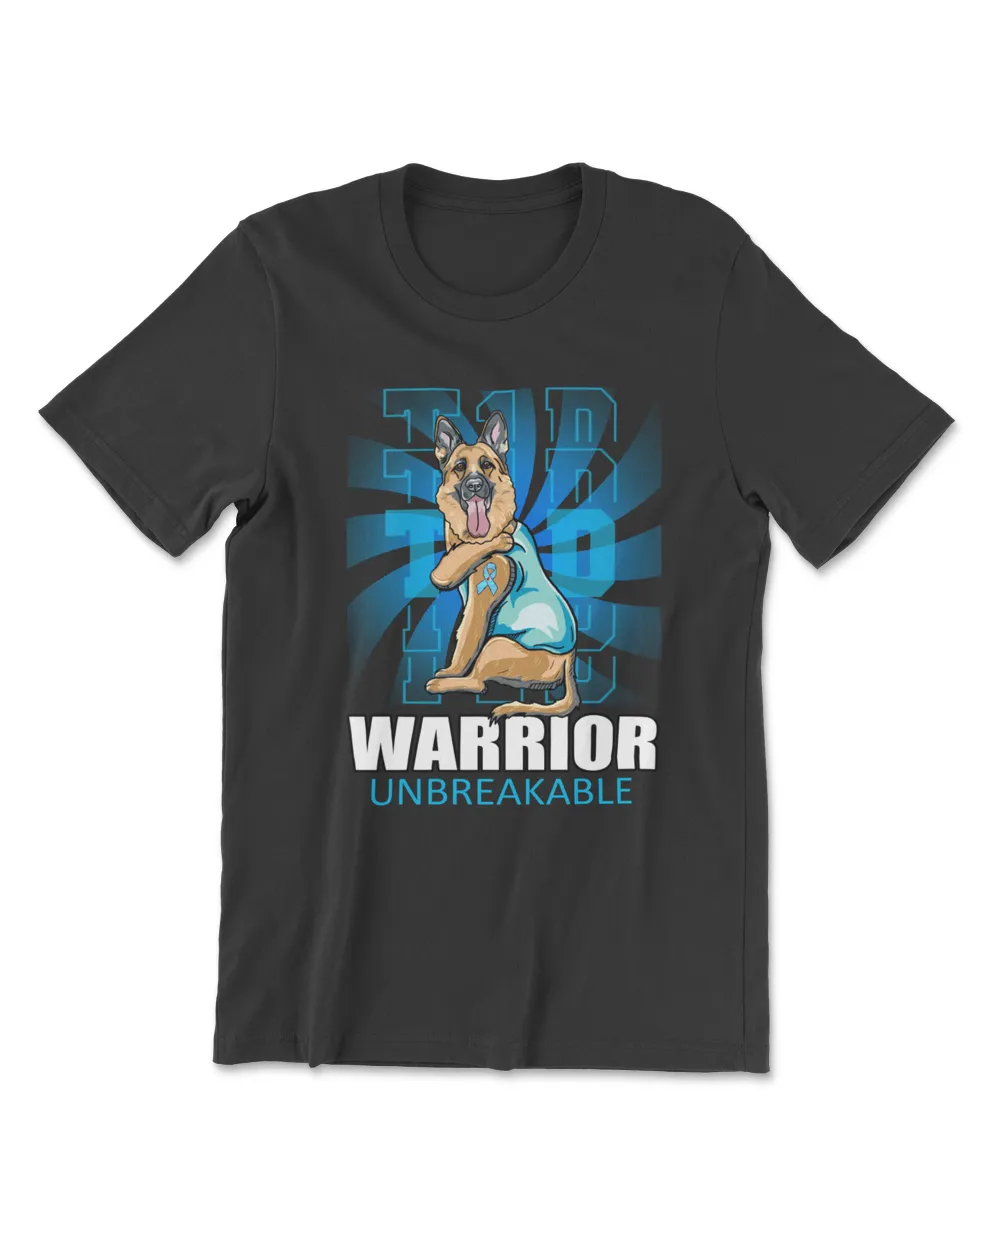 Type1 Diabetes Warrior Unbreakable Funny Shepherd Dog Lovers Diabetes Awareness